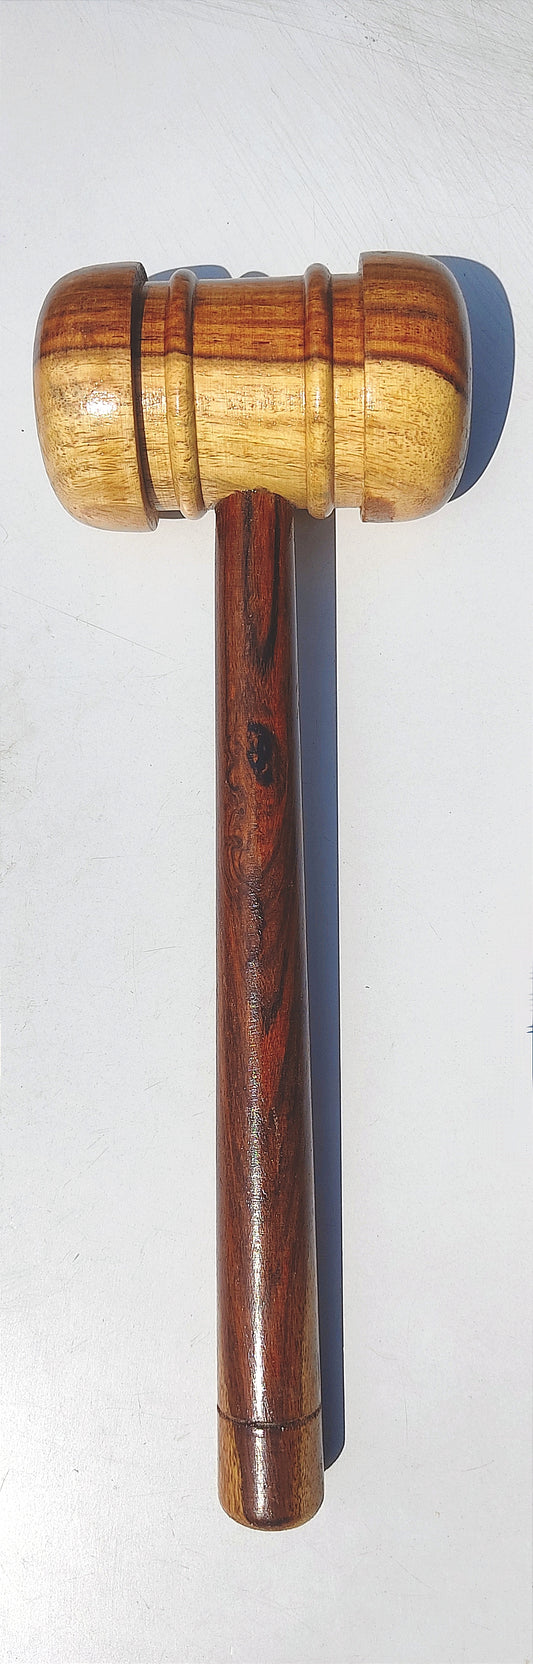 Cricket Bat Wooden Mallet Hammer